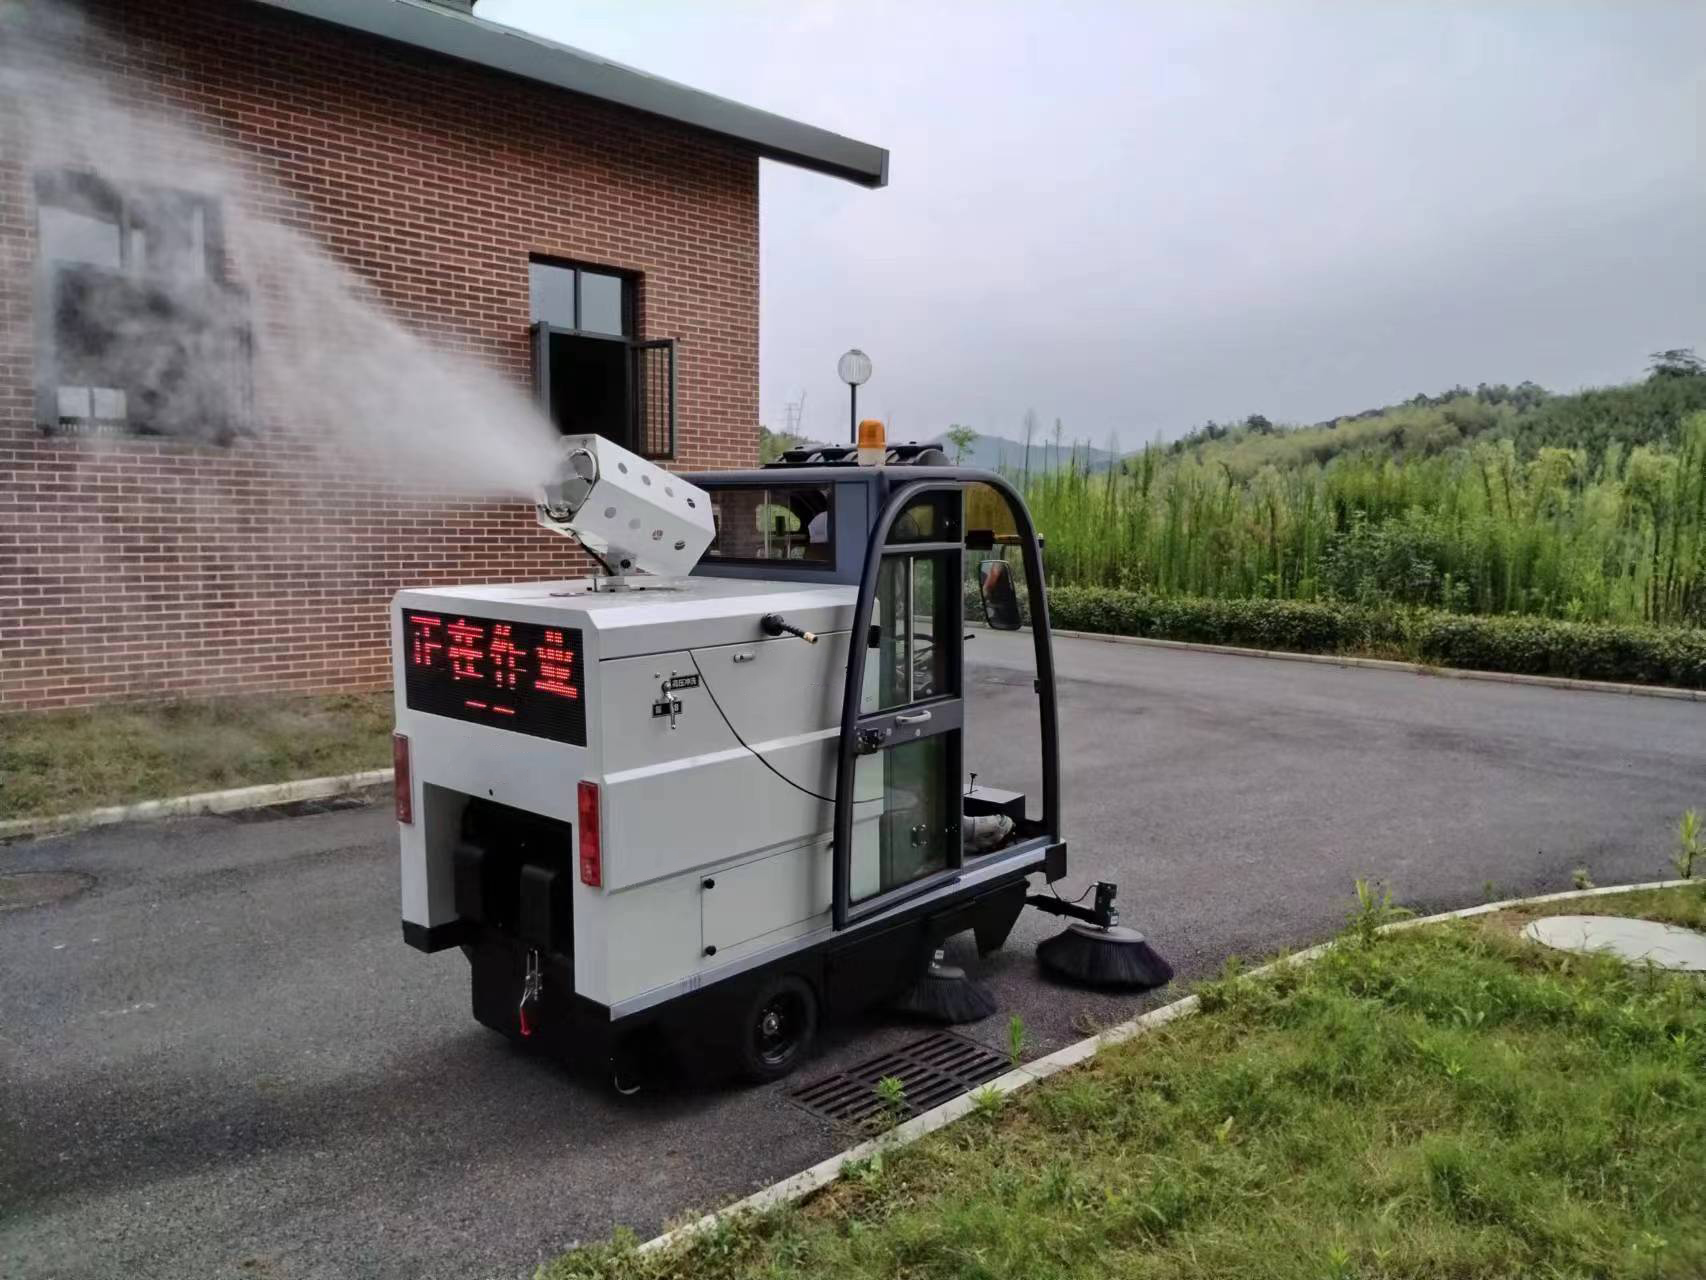 环卫扫地车是一种新型的环保地面清洁设备